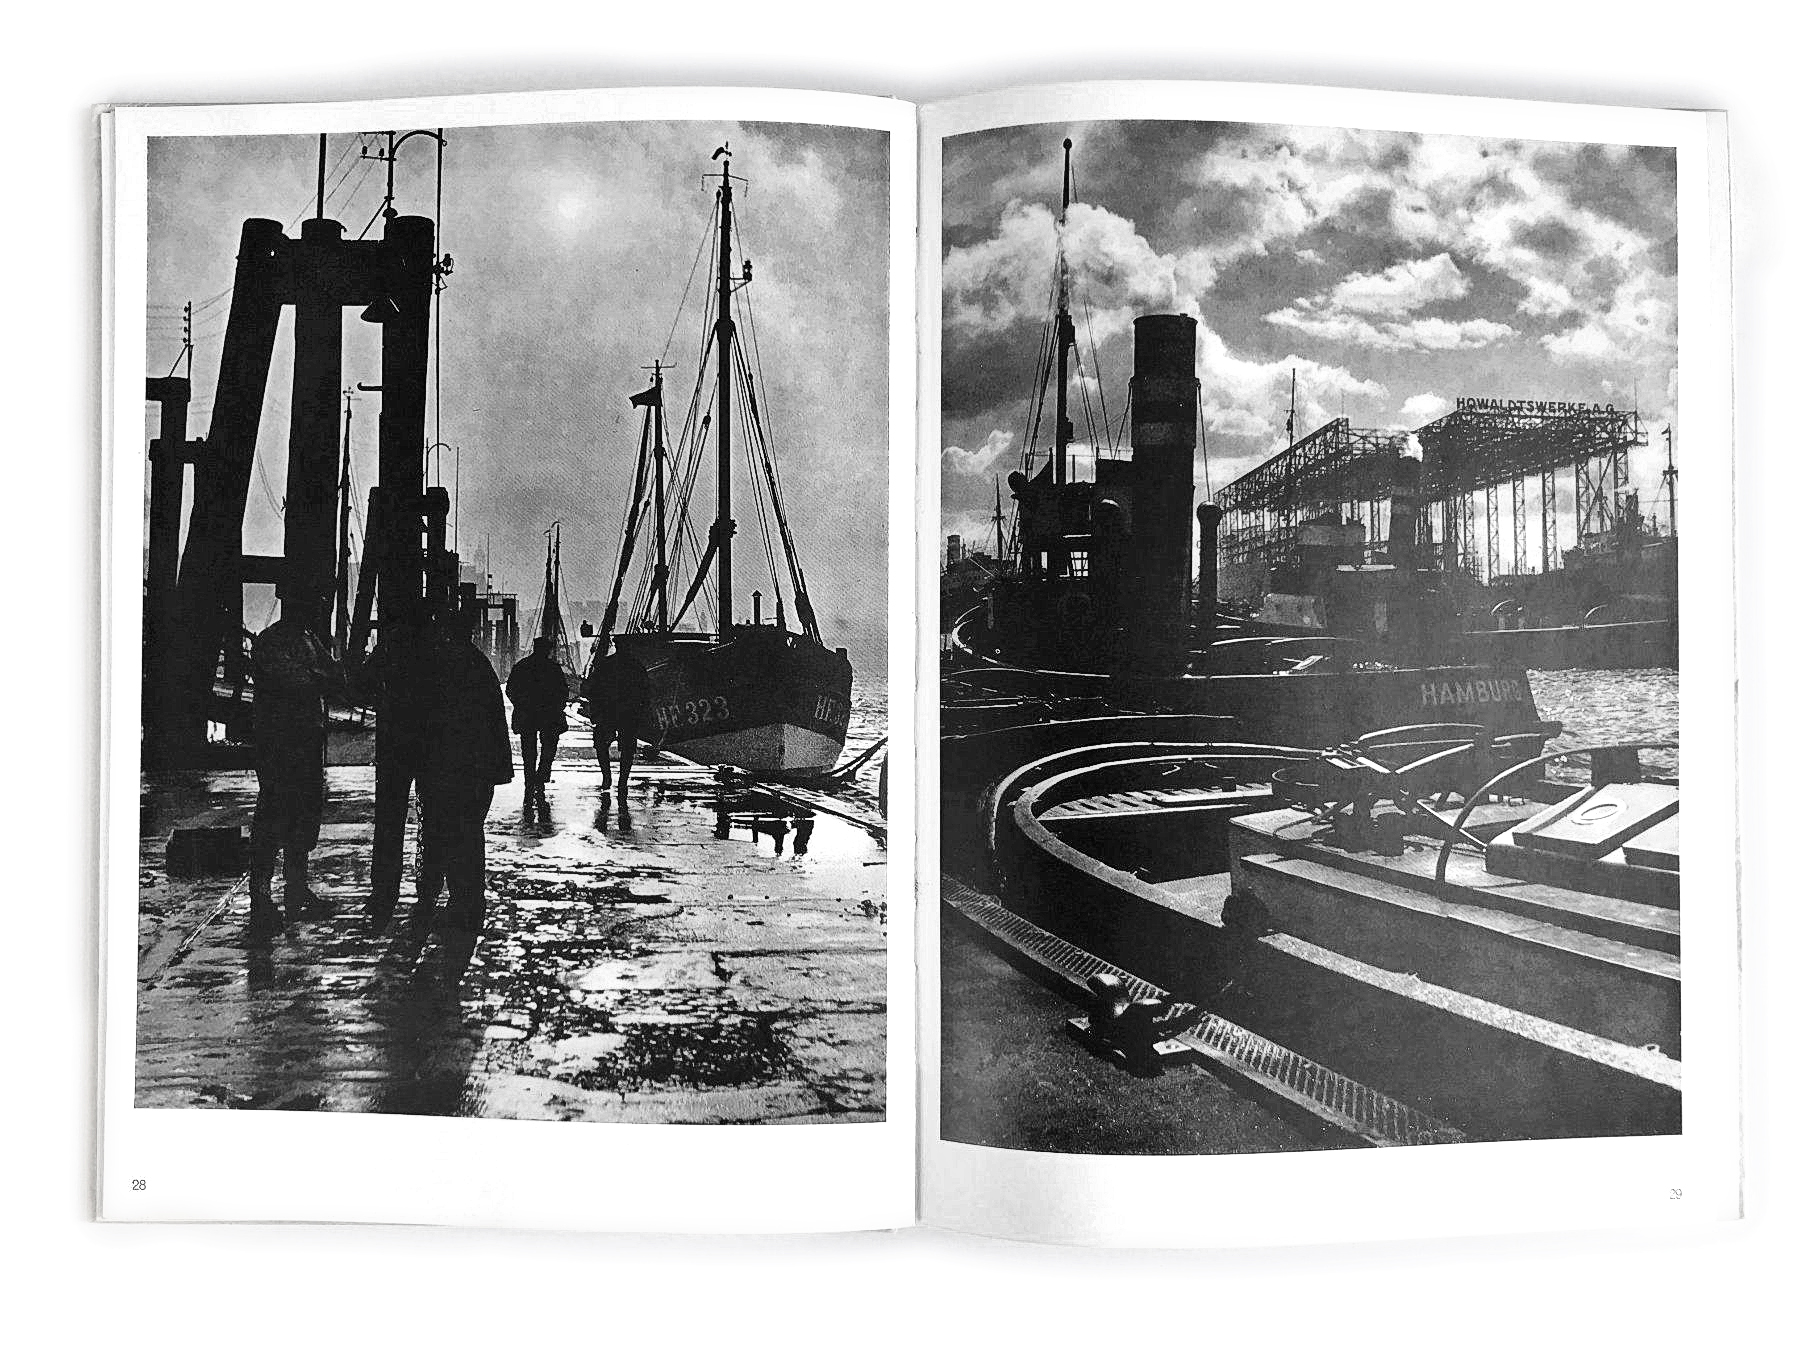 Blick vom Kai des Hamburger Hafens, rechts ein Dock der Howaldswerke, links Bug und Mast eines Schiffs, Buchdoppelseite